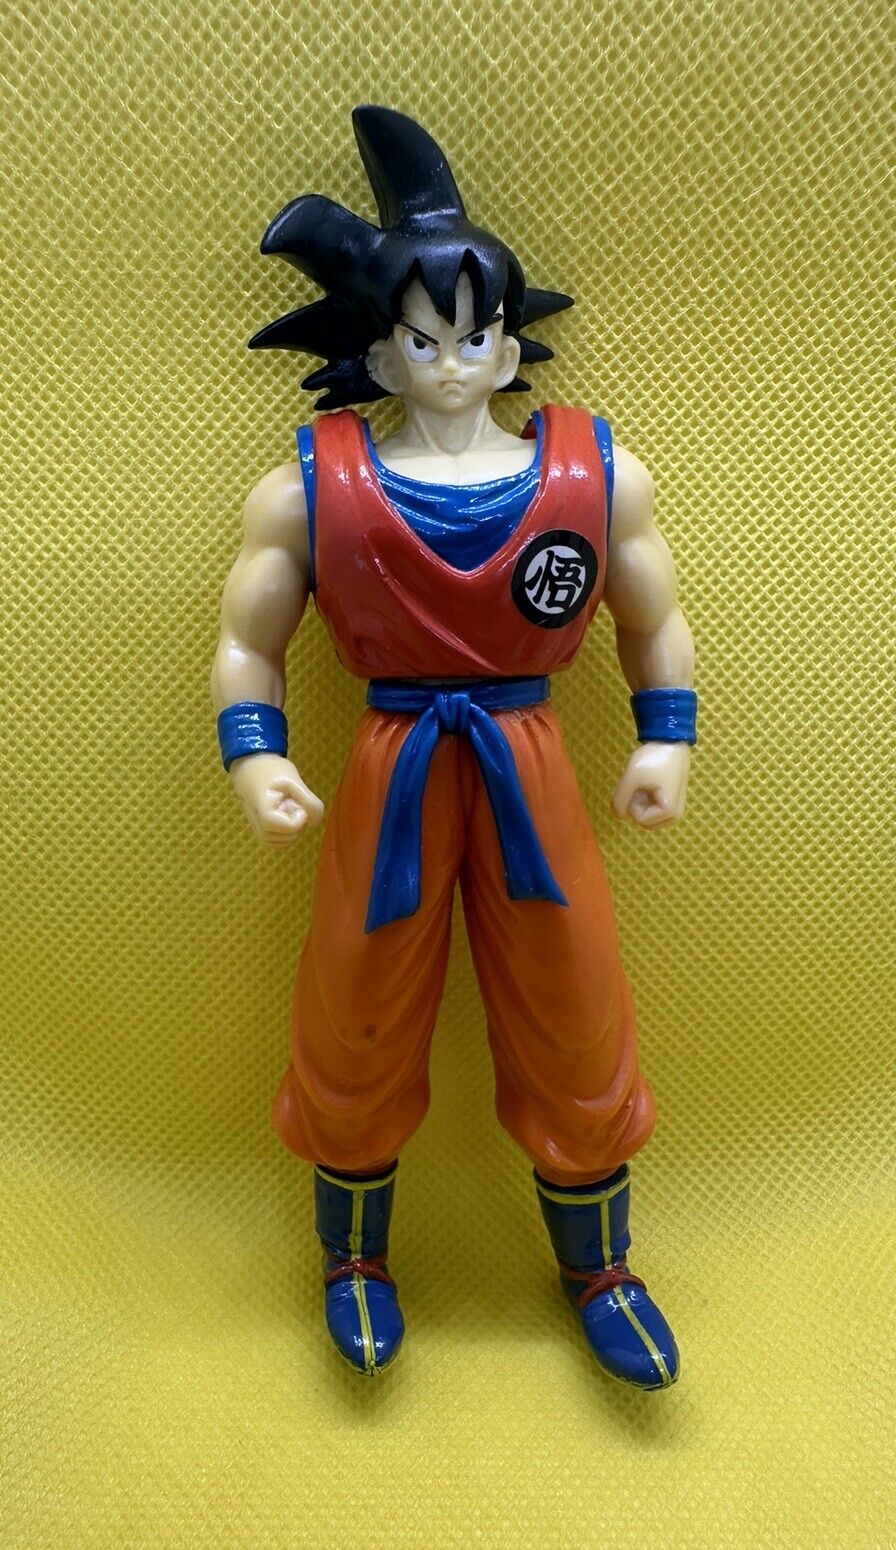 Dragon Ball Z Super Battle Collection Son Goku Action Figure 1996 Bandai Vintage